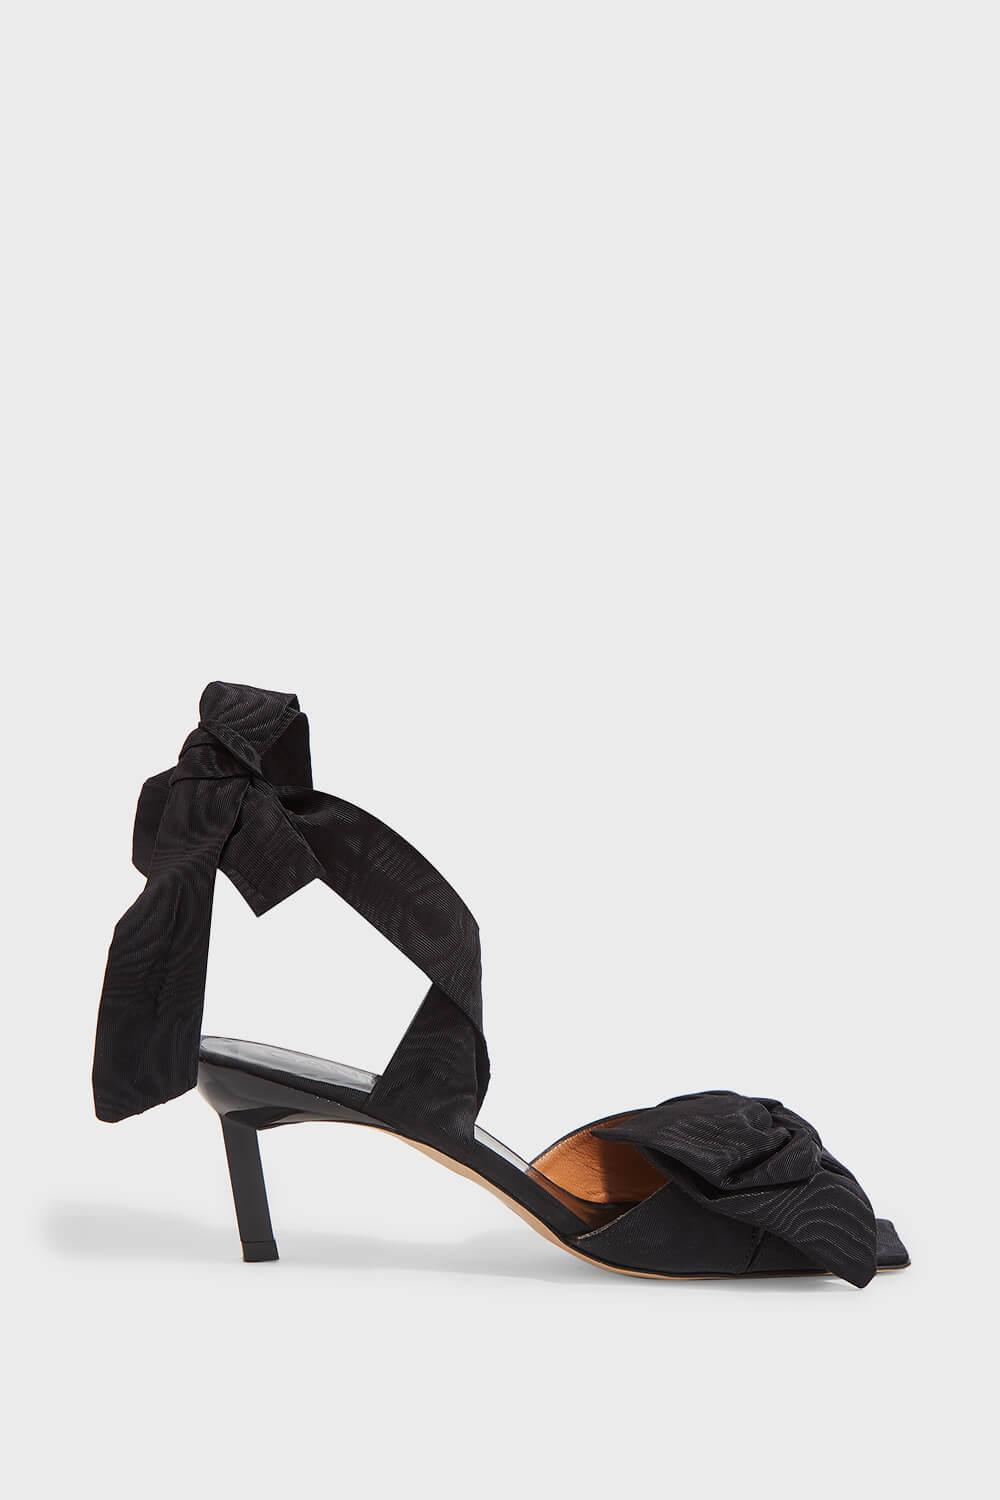 Ganni Bow-detail Tie-up Sandals in Black - Lyst